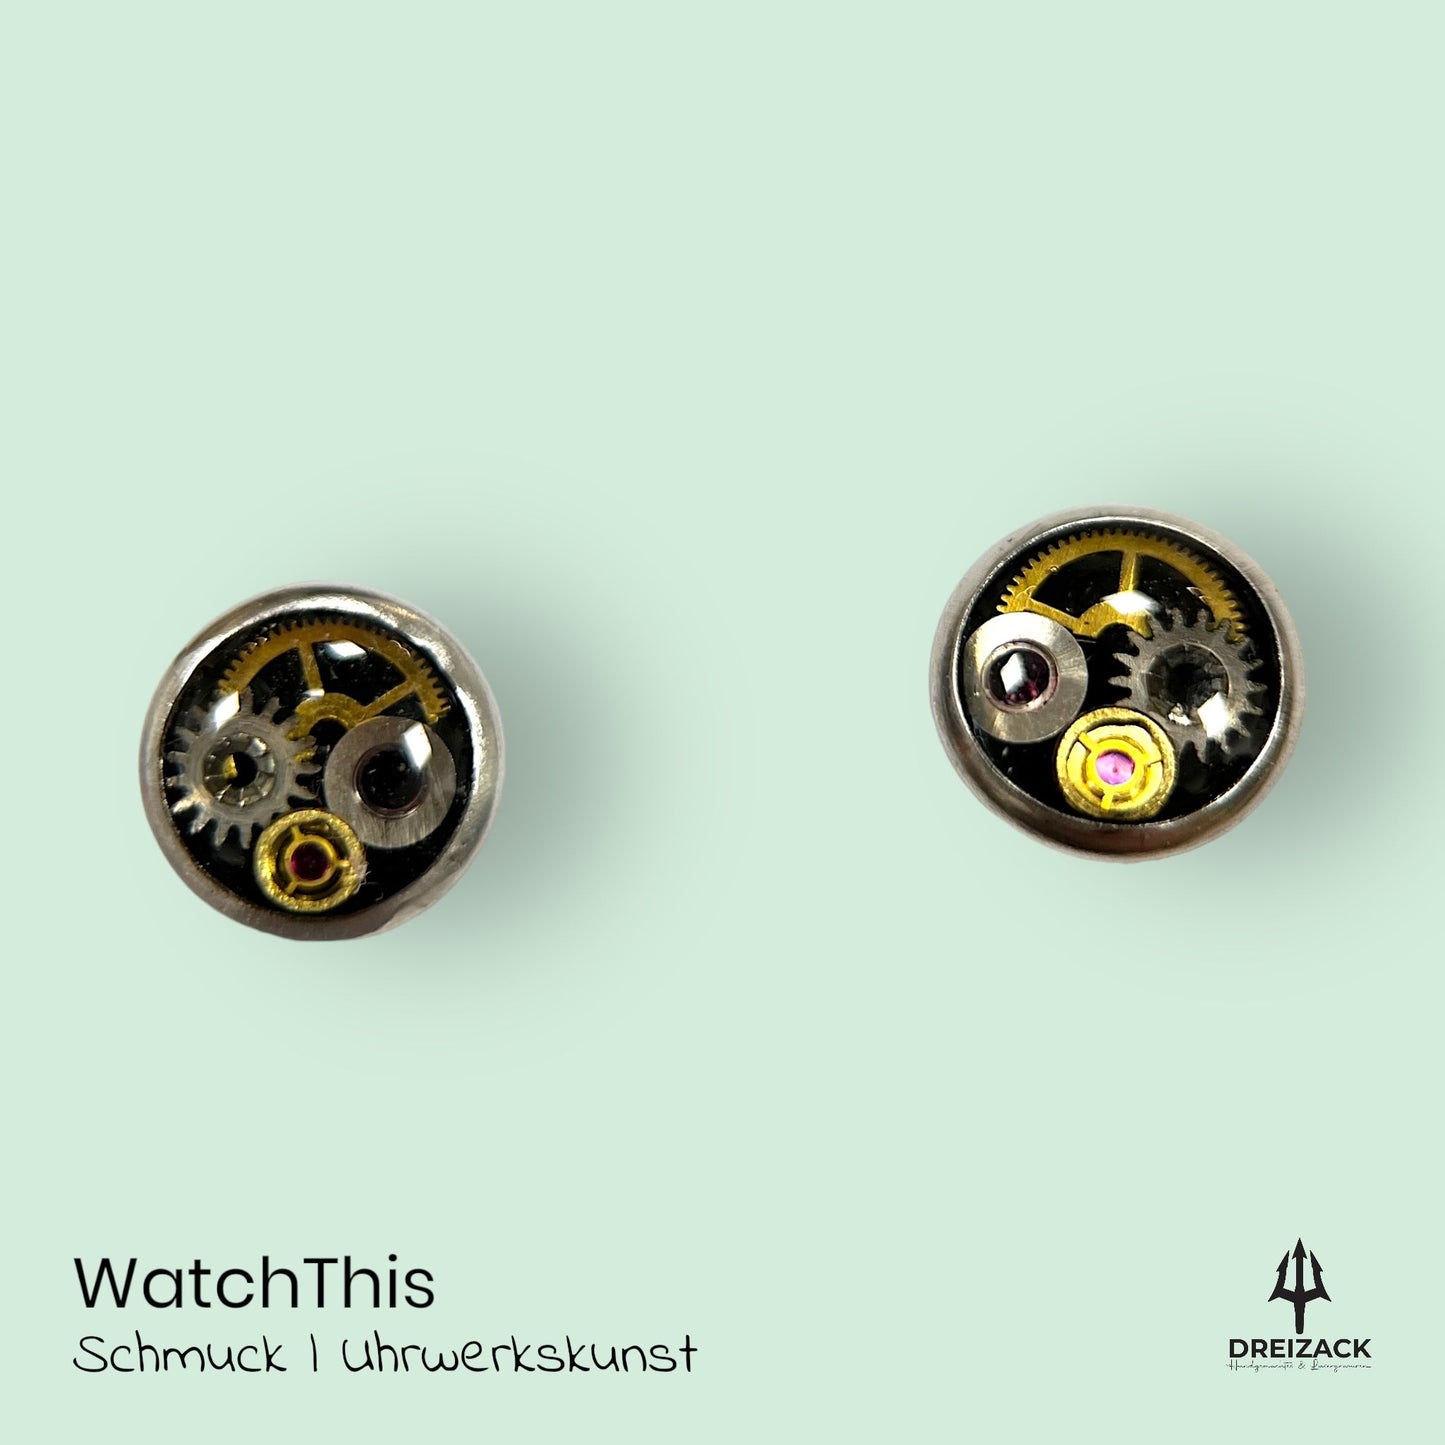 Ohrstecker von WatchThis - Zeitlose Eleganz aus Uhrwerken 6mm | Isolde Schmuck WatchThis oesterreich handgemachte geschenke in wien